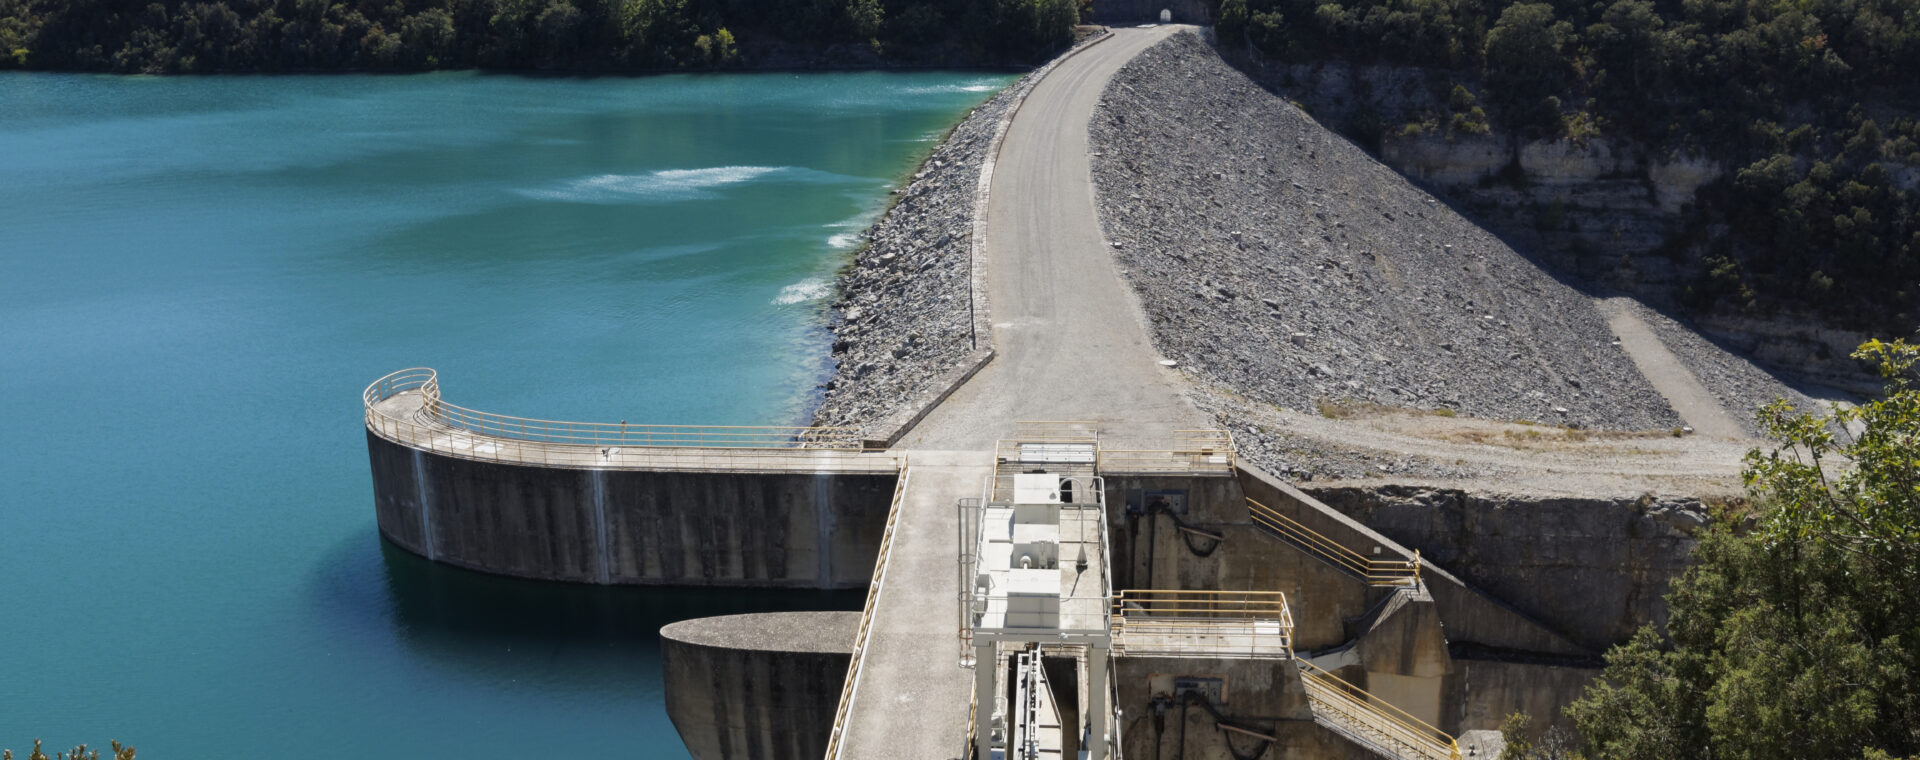 Barrage hydroelectrique d'Esparron de verdon